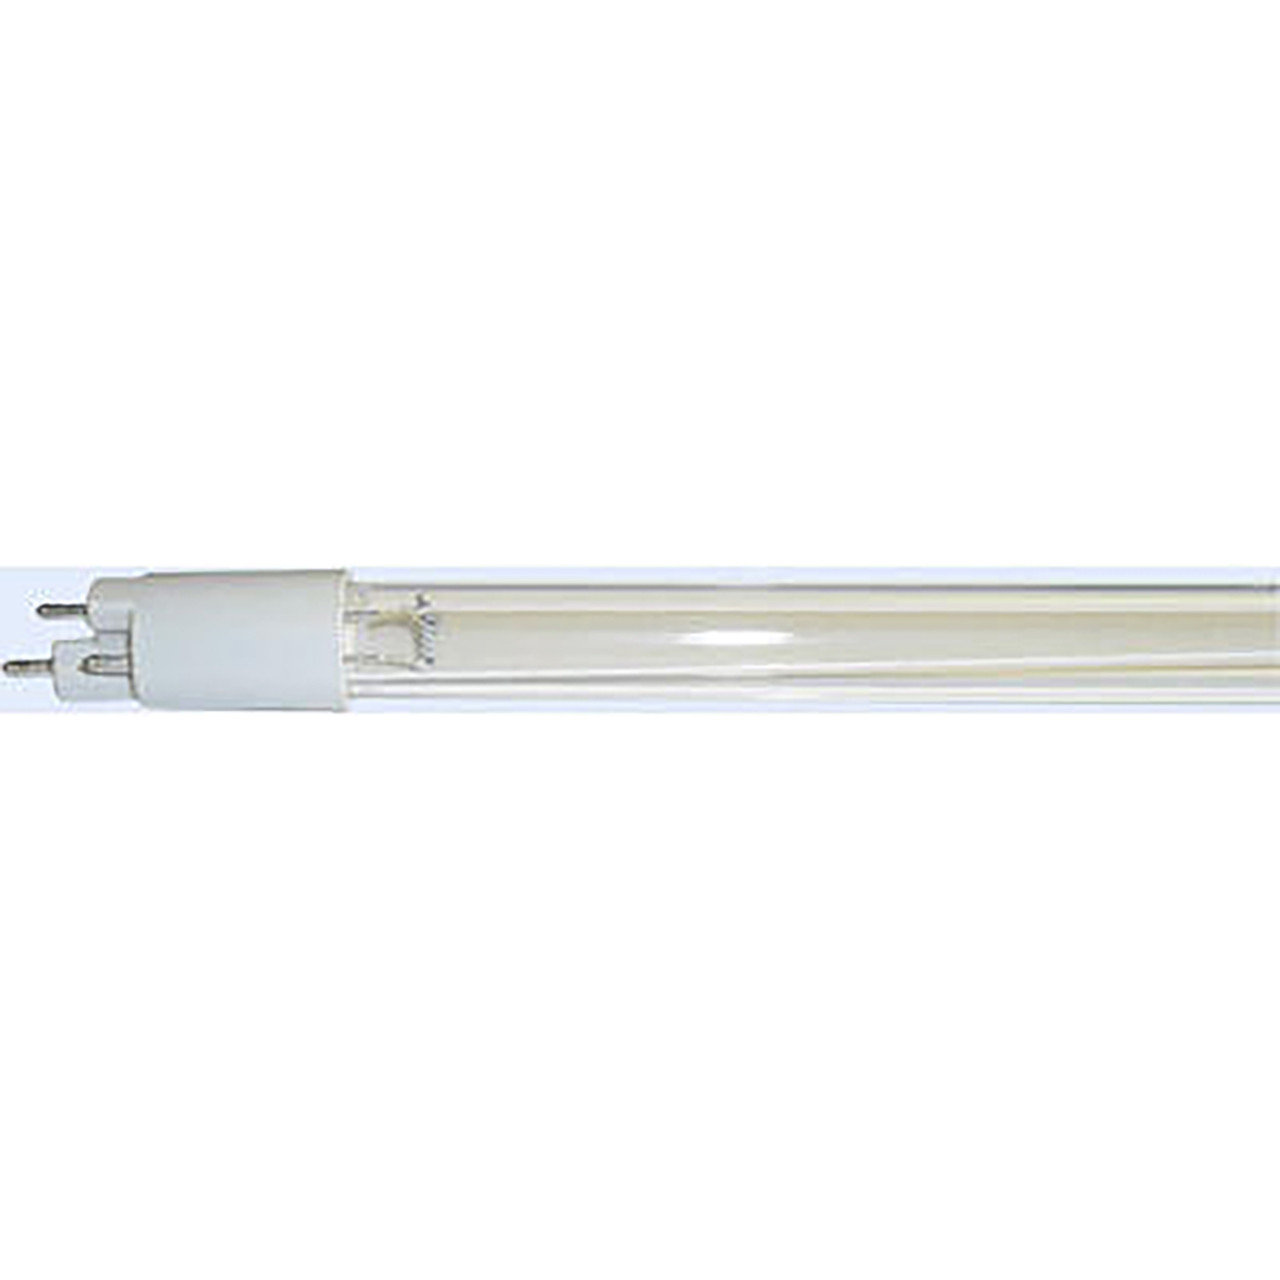 UV Lamp for The AQ-UV-STD UV System AQ-UV-STD-LAMP 